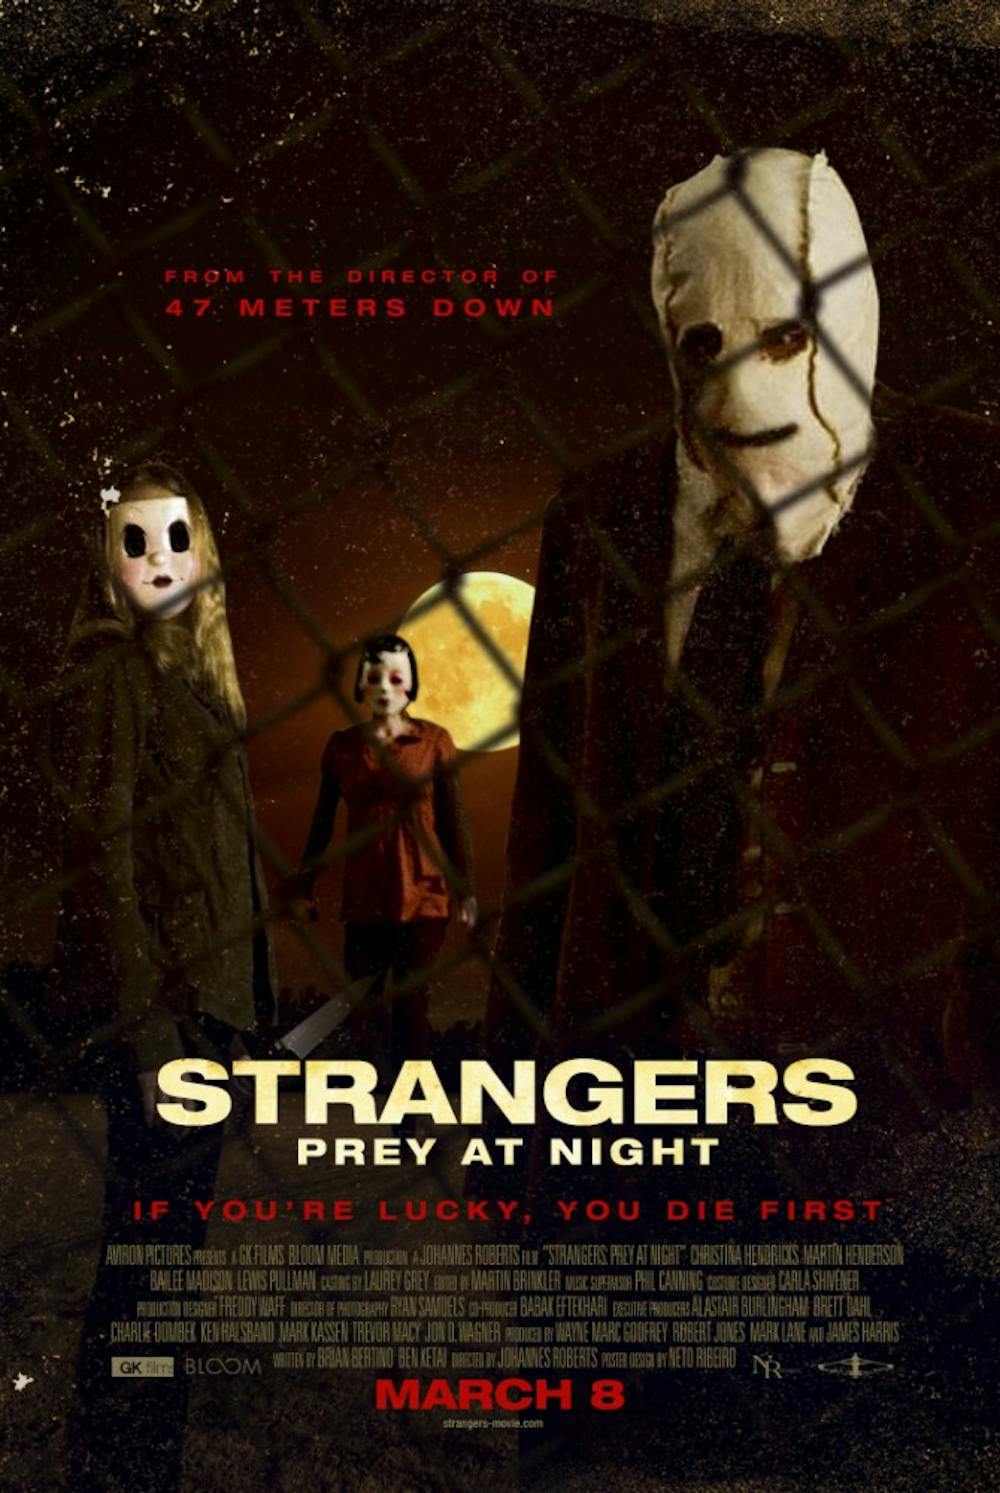 Poster courtesy of IMDb